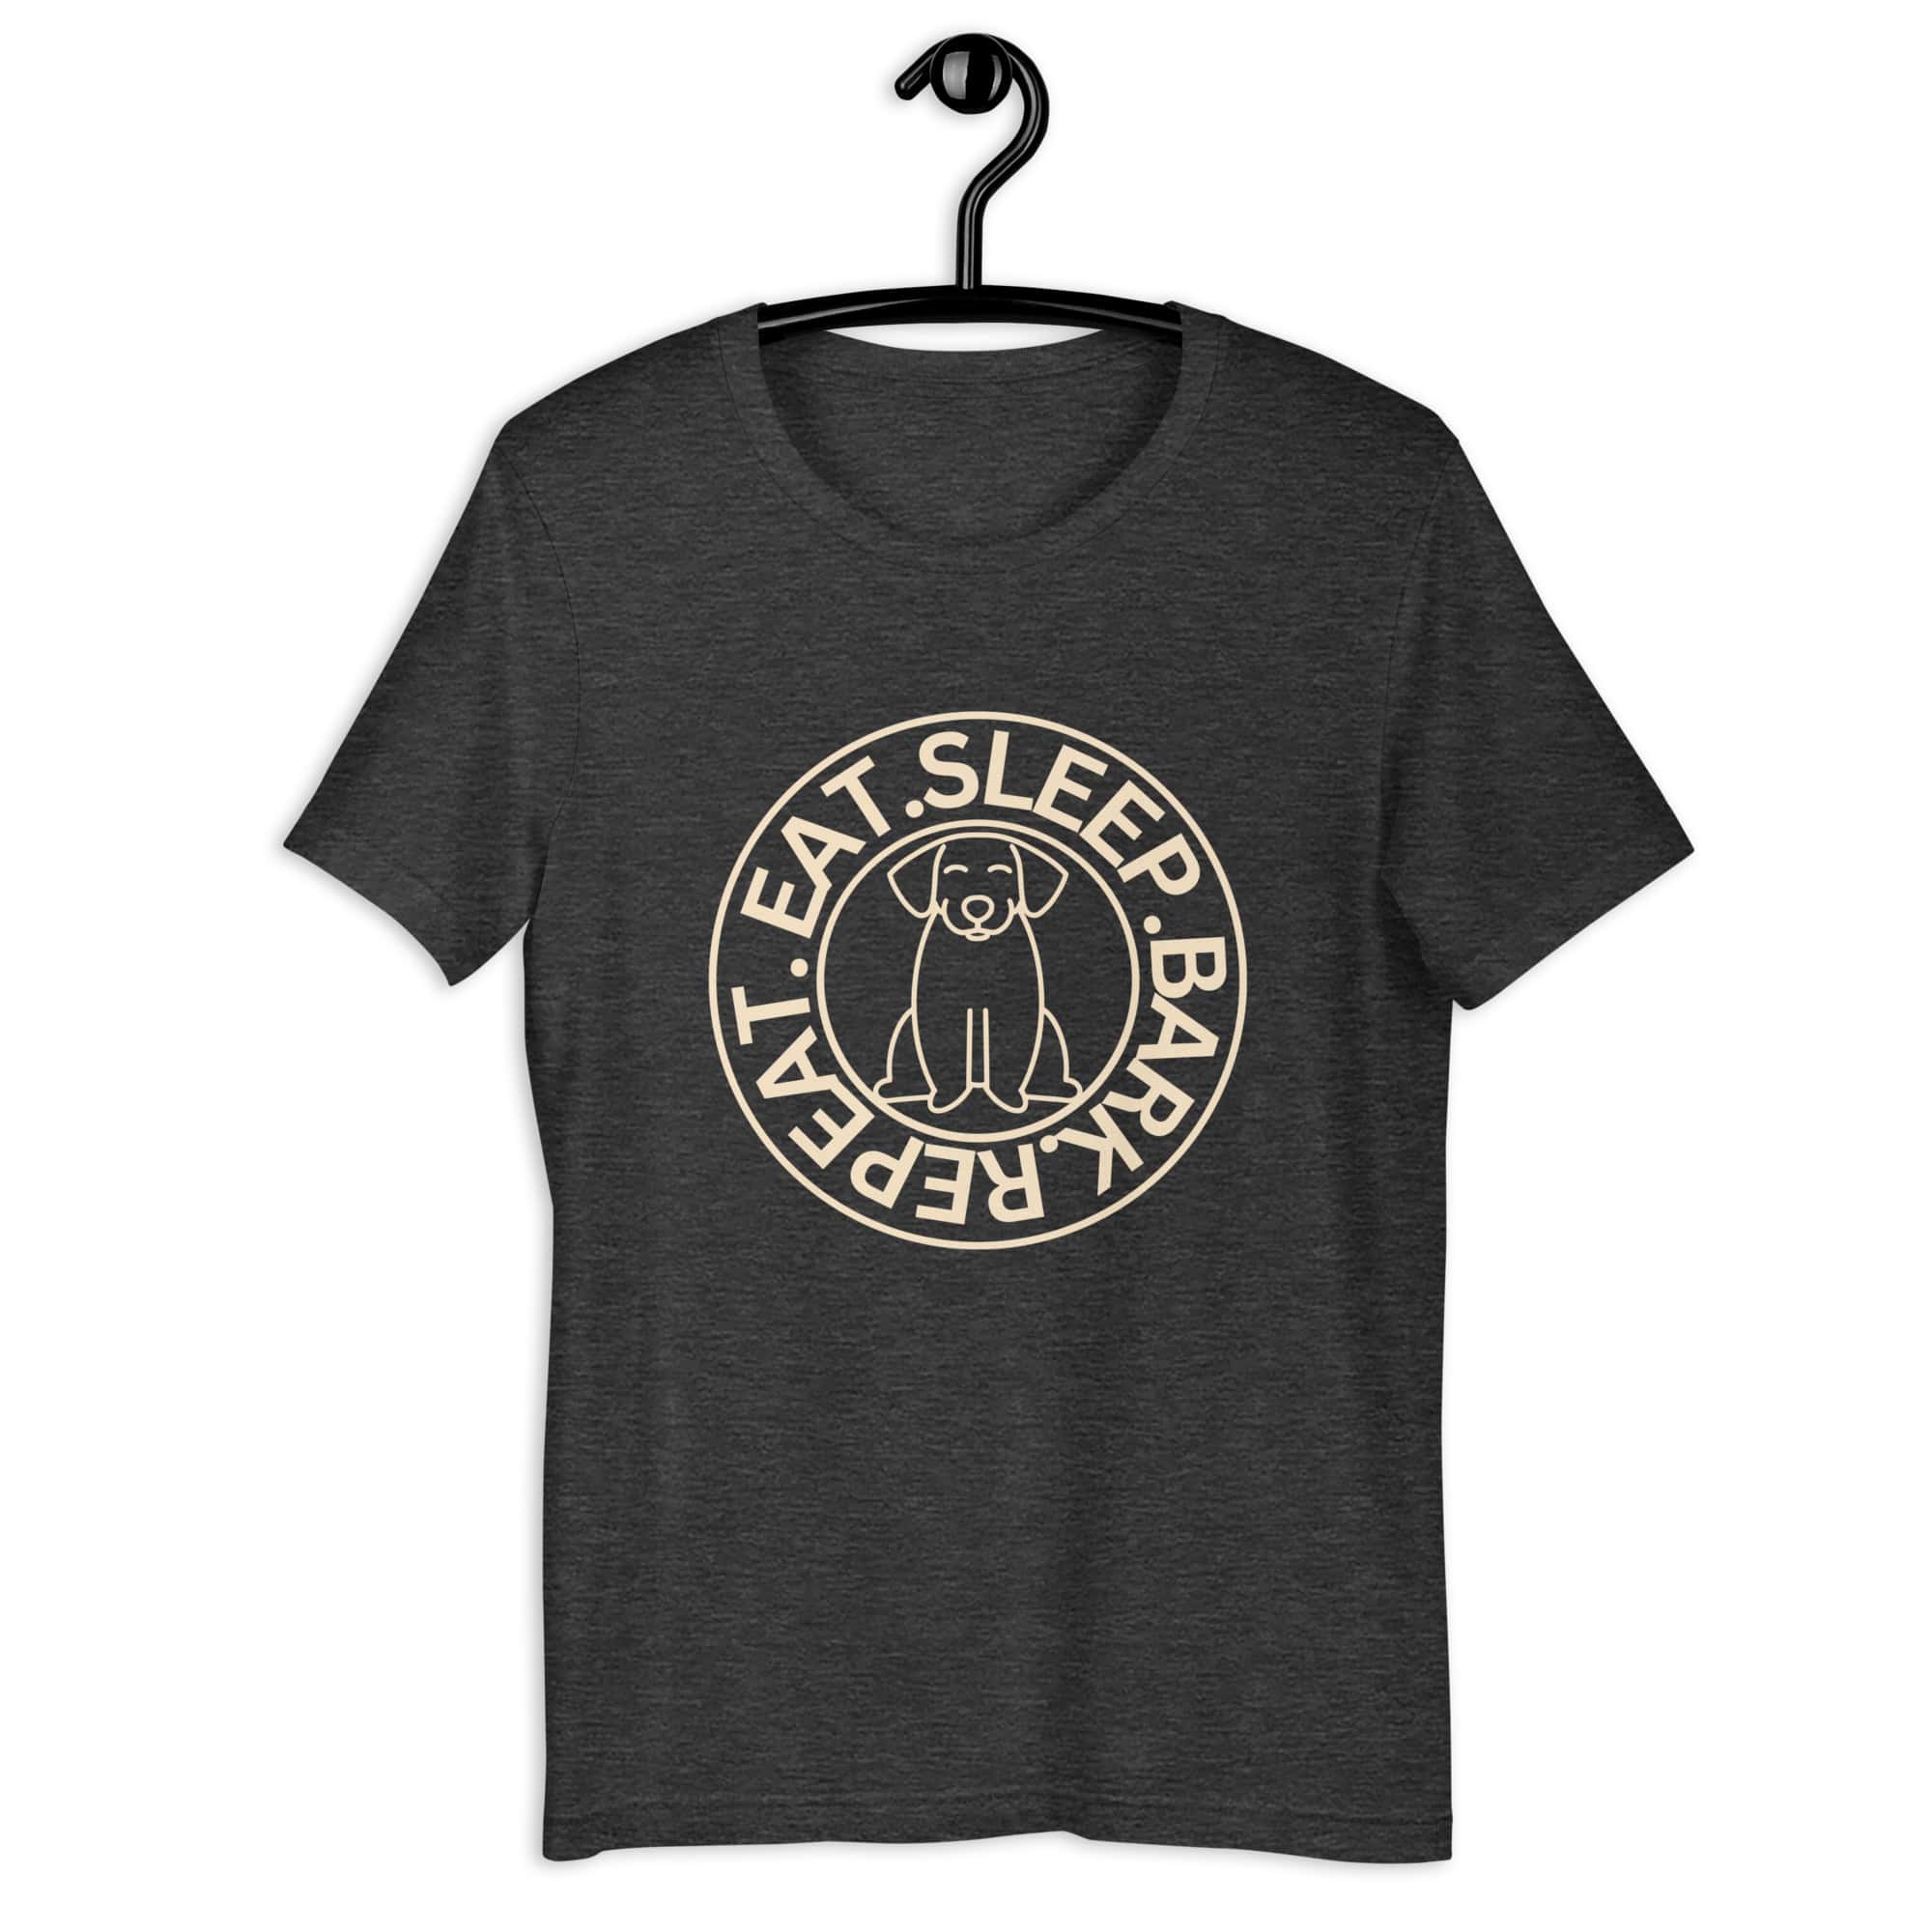 Eat Sleep Bark Repeat Ransylvanian Hound (Erdélyi Kopó) Unisex T-Shirt. Dark Grey